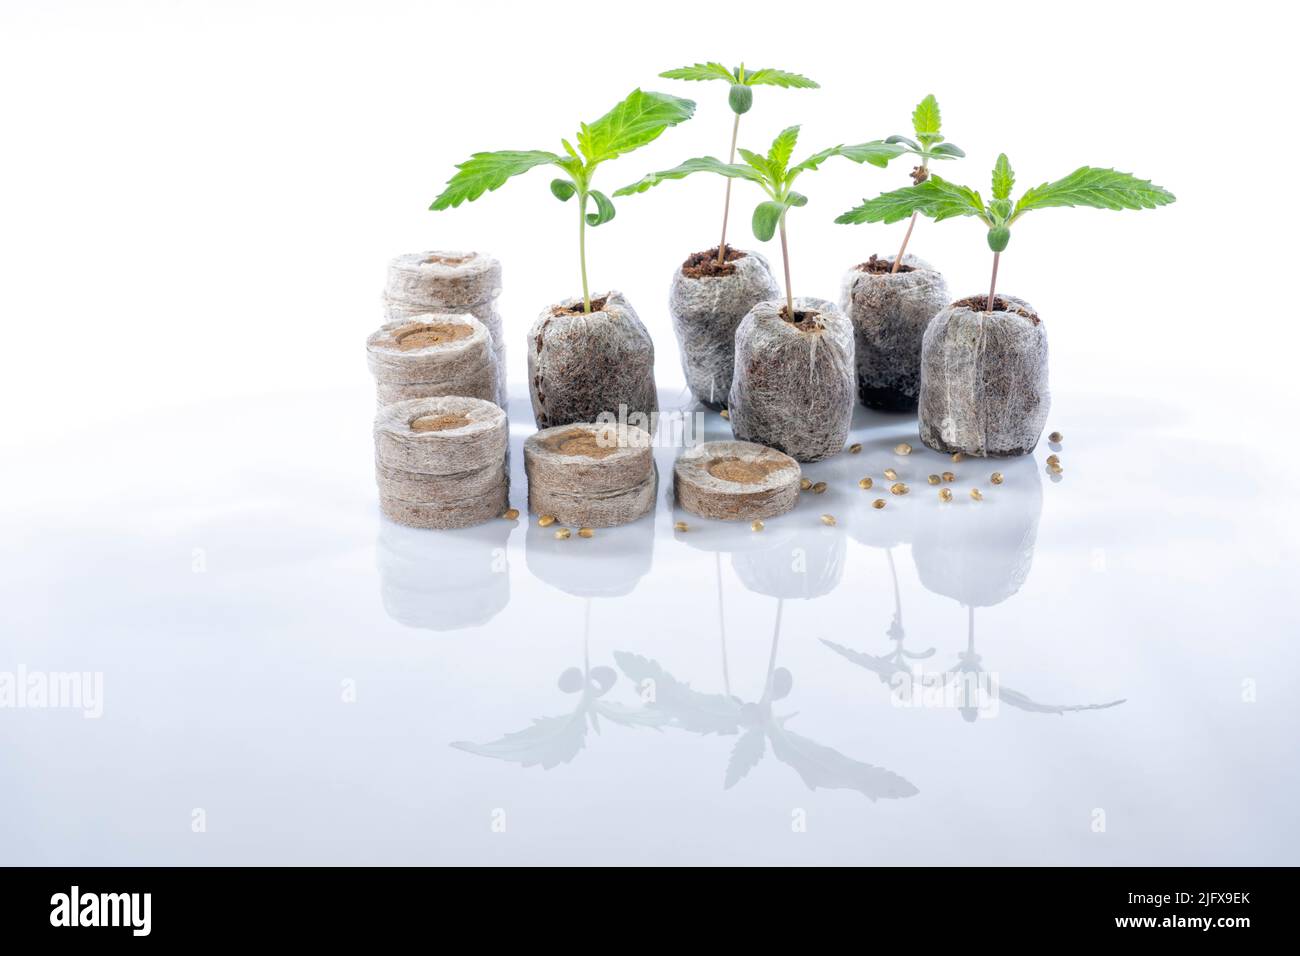 Plusieurs Jiffys germent des graines de cannabis avec une plante déjà née comme exemple isolée sur blanc avec réflexion sur le sol Banque D'Images